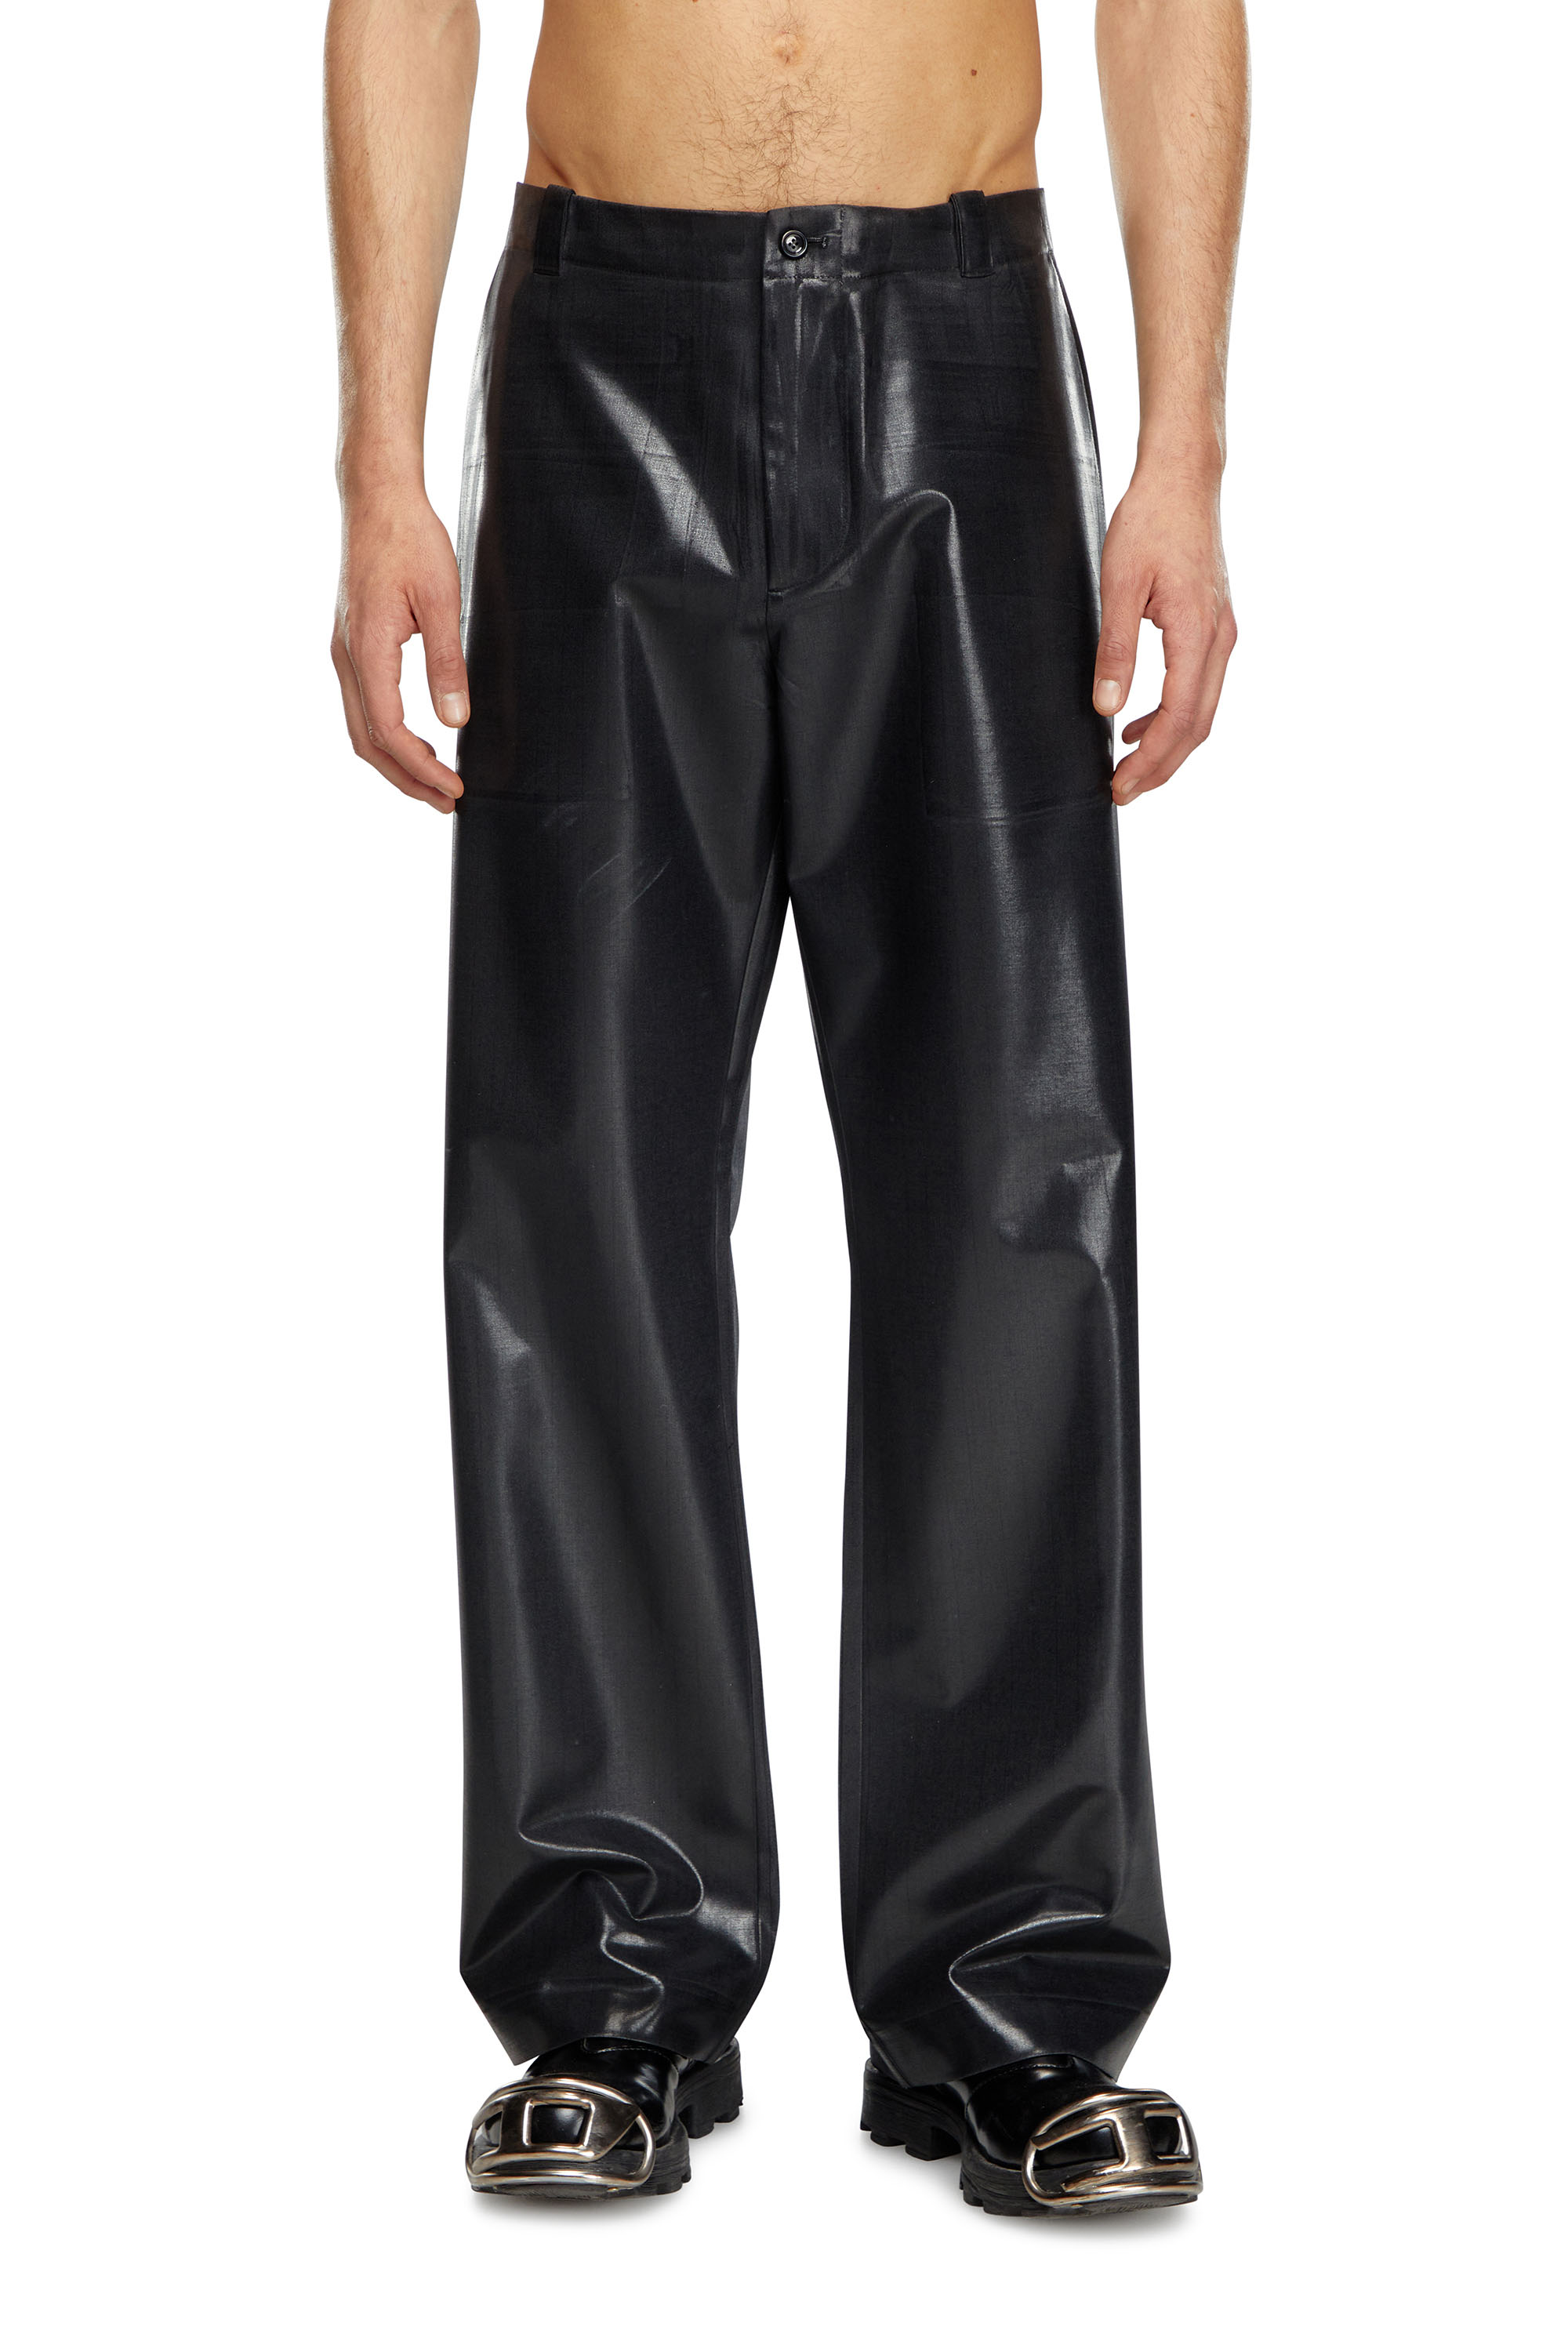 Diesel - P-STANLEY, Homme Pantalon à fines rayures avec devant enduit in Noir - Image 2